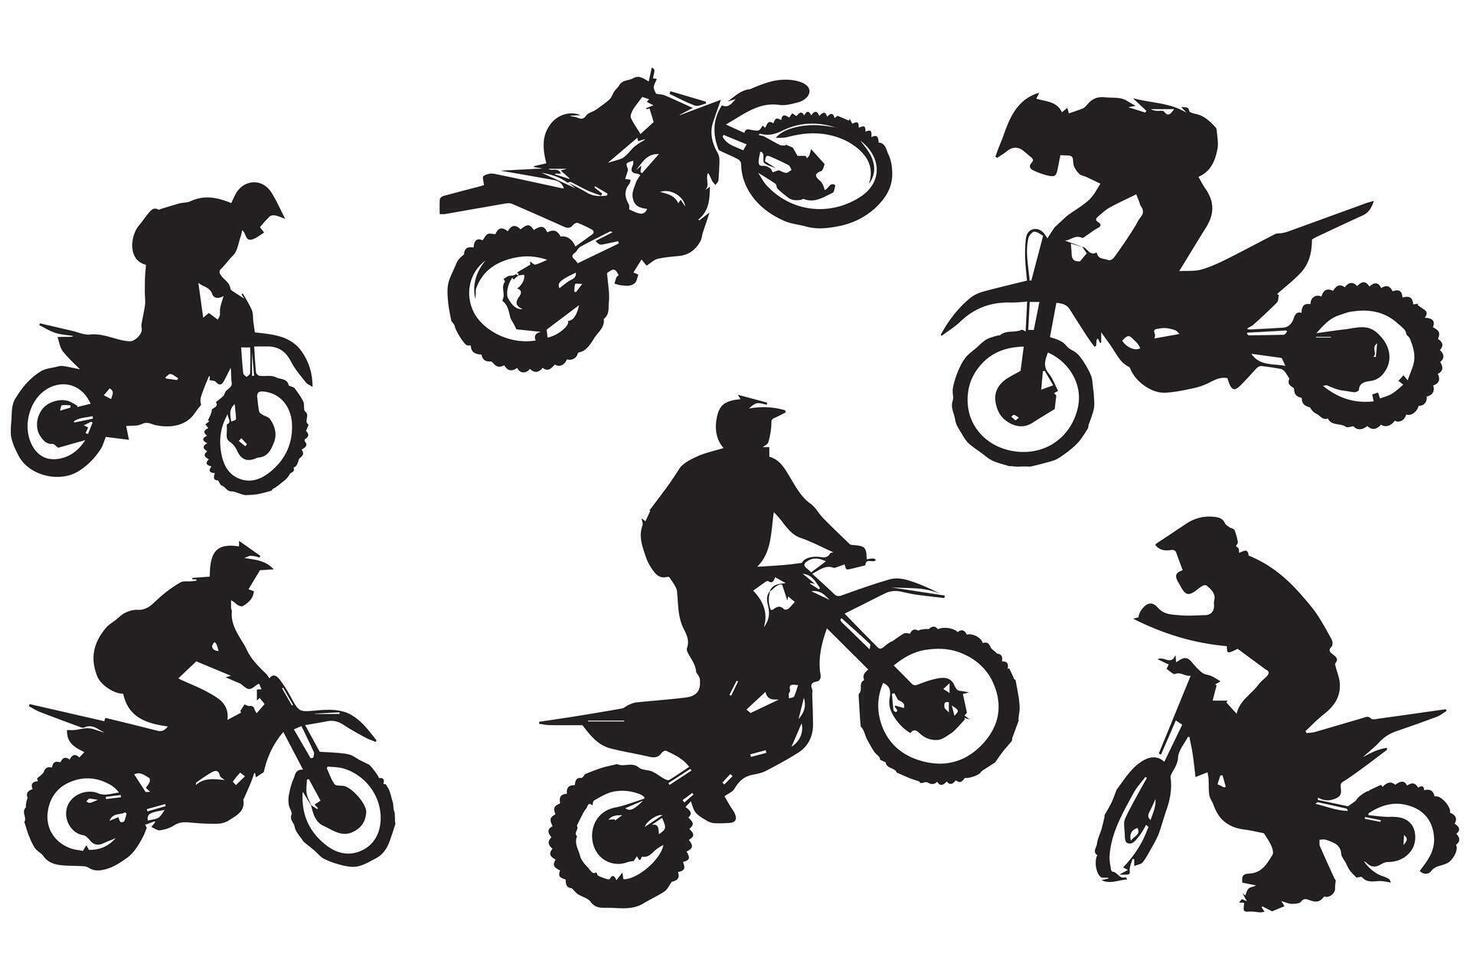 silhouet van een fietser aan het doen vrije stijl trucs Aan zijn motorfiets silhouet reeks vrij ontwerp vector